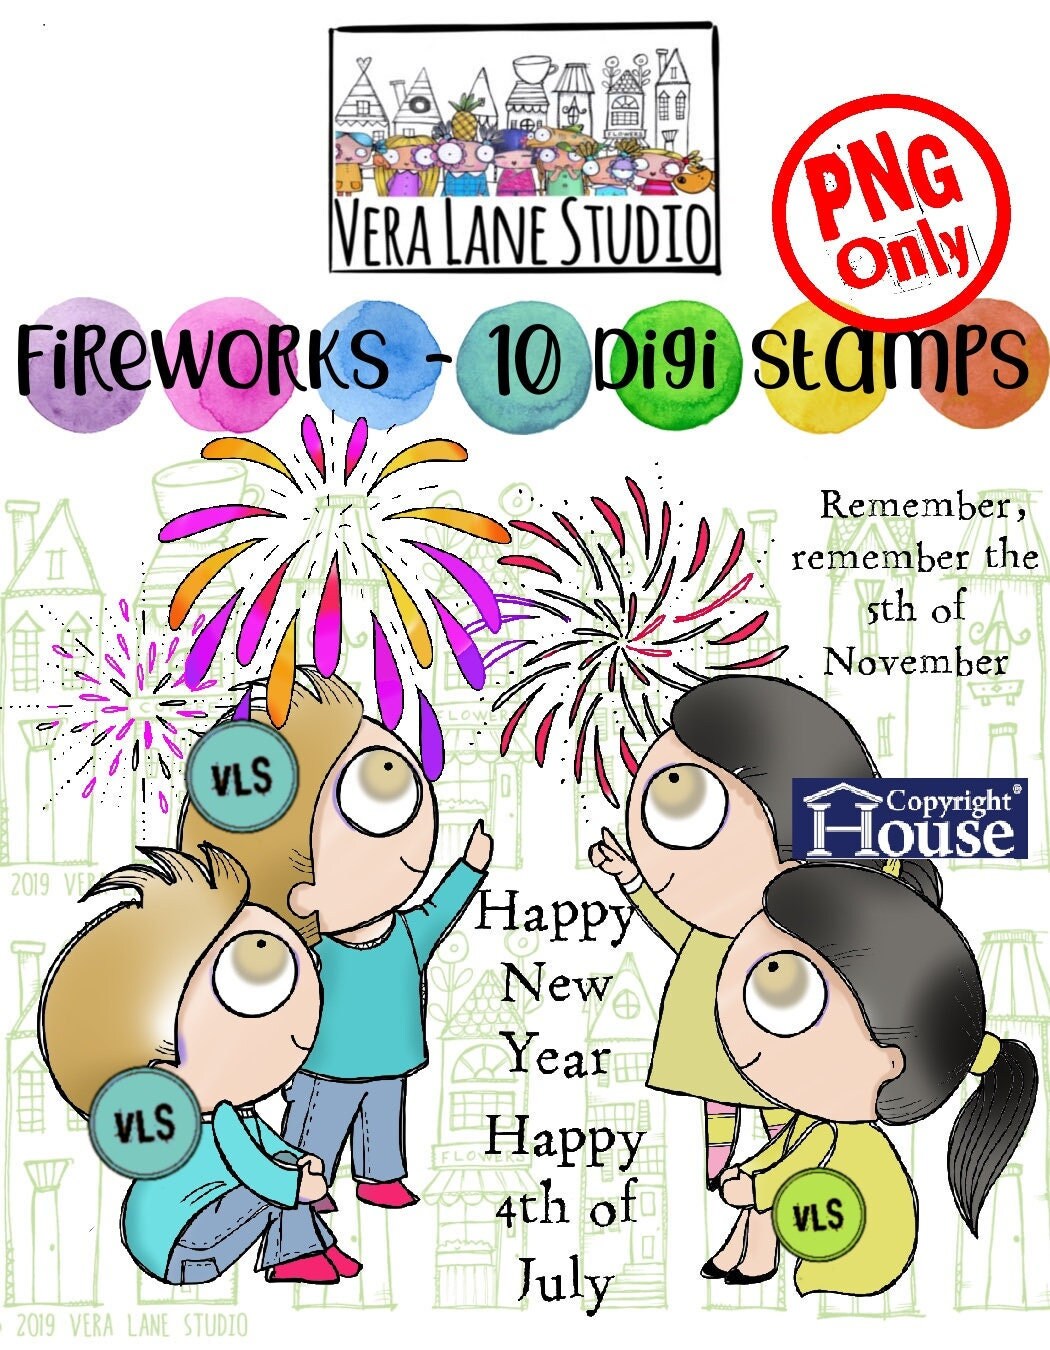 Fireworks - 10 Digi stamps